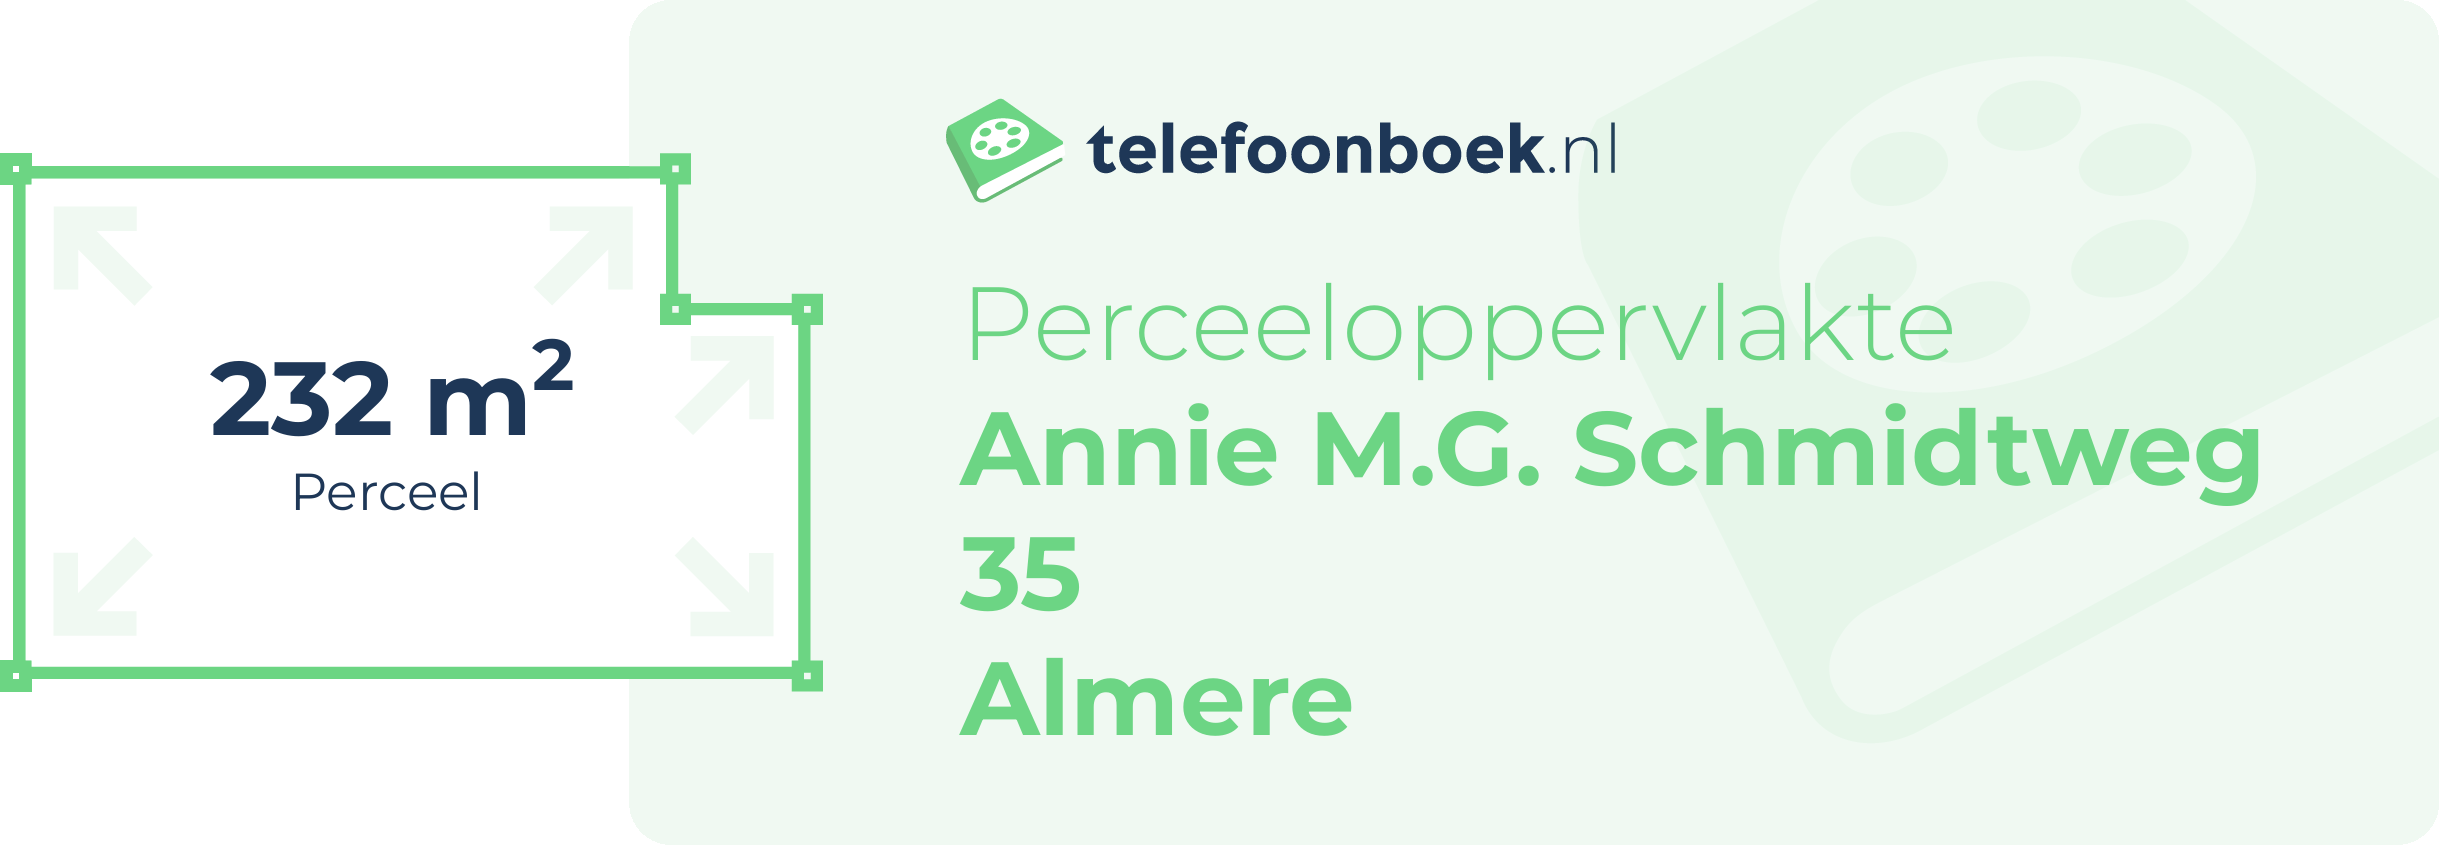 Perceeloppervlakte Annie M.G. Schmidtweg 35 Almere